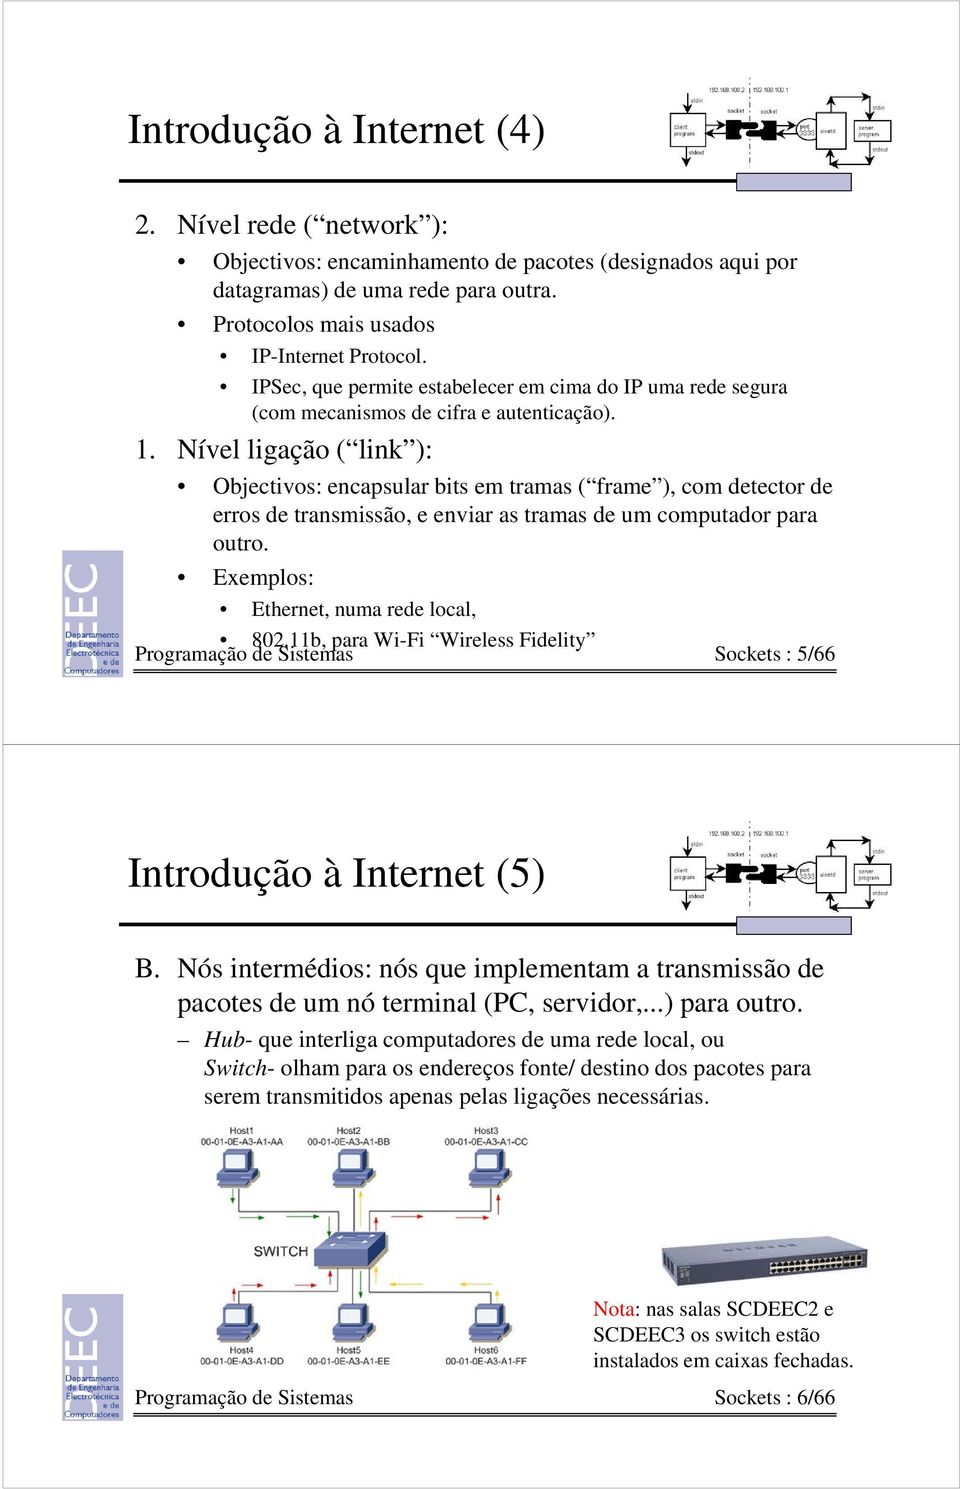 Nível ligação ( link ): Objectivos: encapsular bits em tramas ( frame ), com detector de erros de transmissão, e enviar as tramas de um computador para outro. Exemplos: Ethernet, numa rede local, 802.